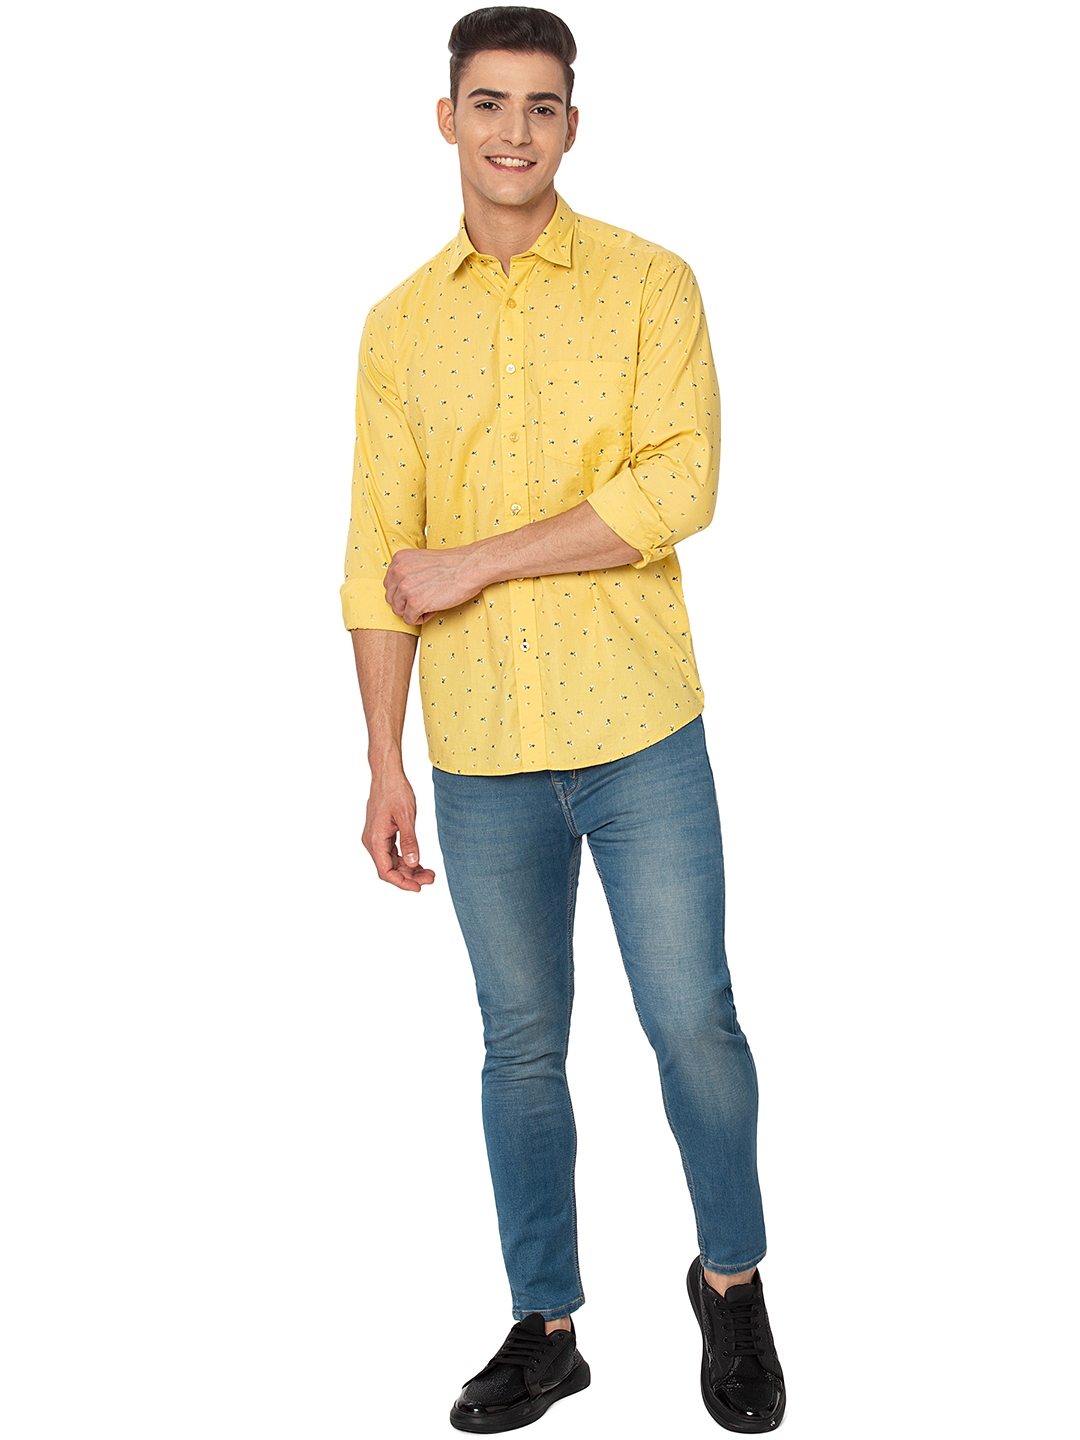 Greenfibre | Lemon Yellow Printed Slim Fit Casual Shirt | Greenfibre 3